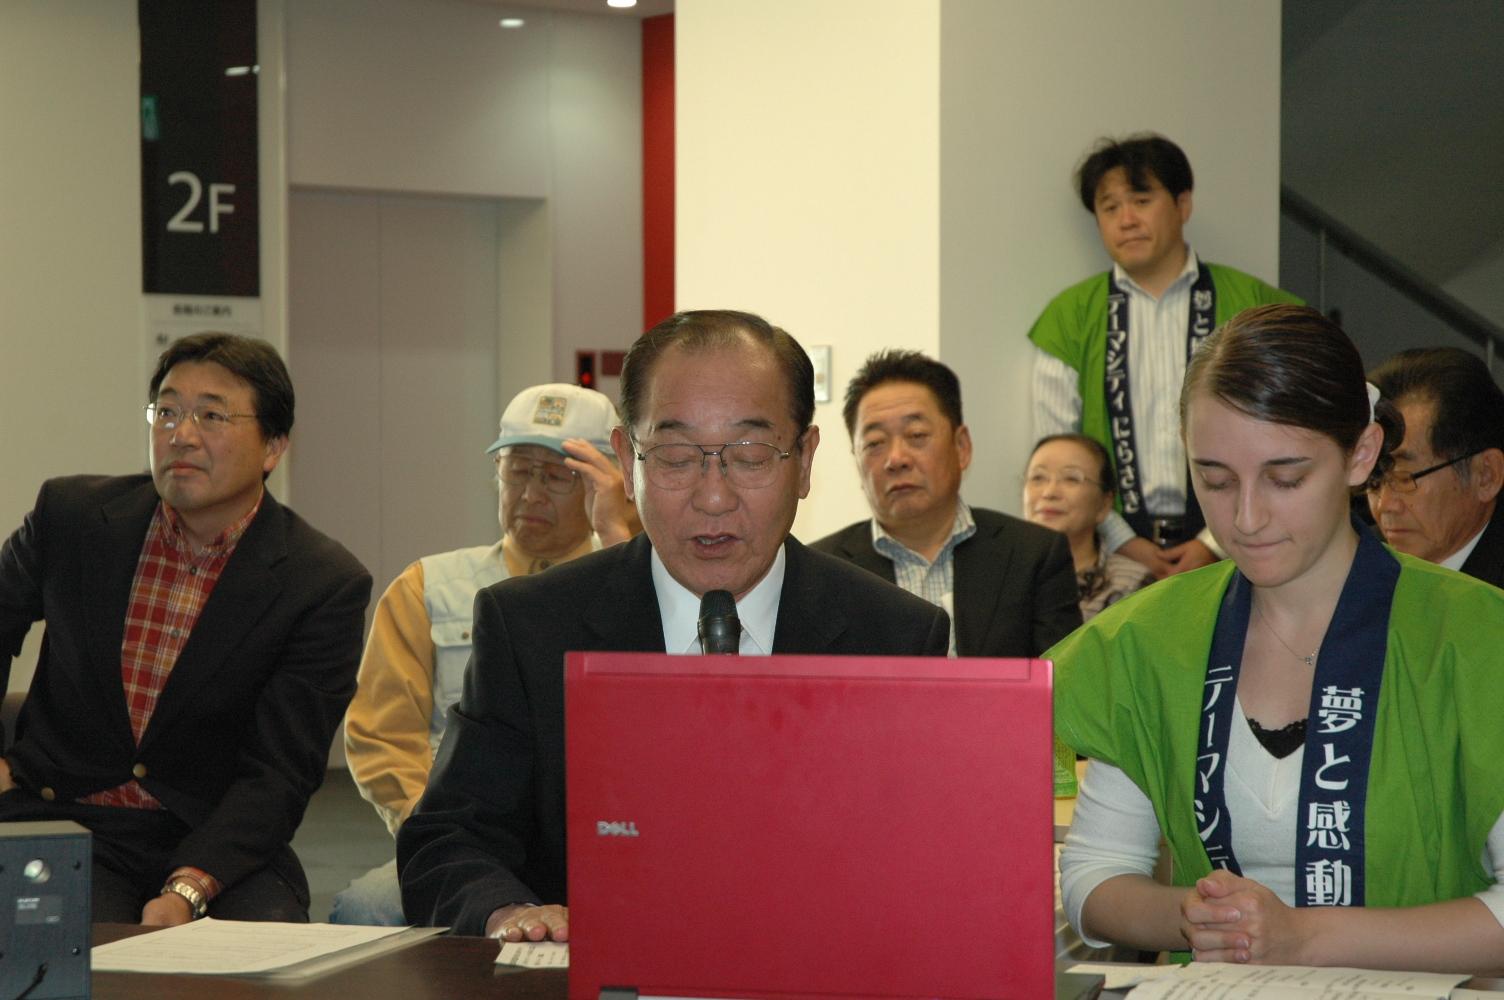 韮崎市長と緑色のはっぴを着た外国人女性がノートパソコンの前に座り、その後ろに座っている市民の人達の写真